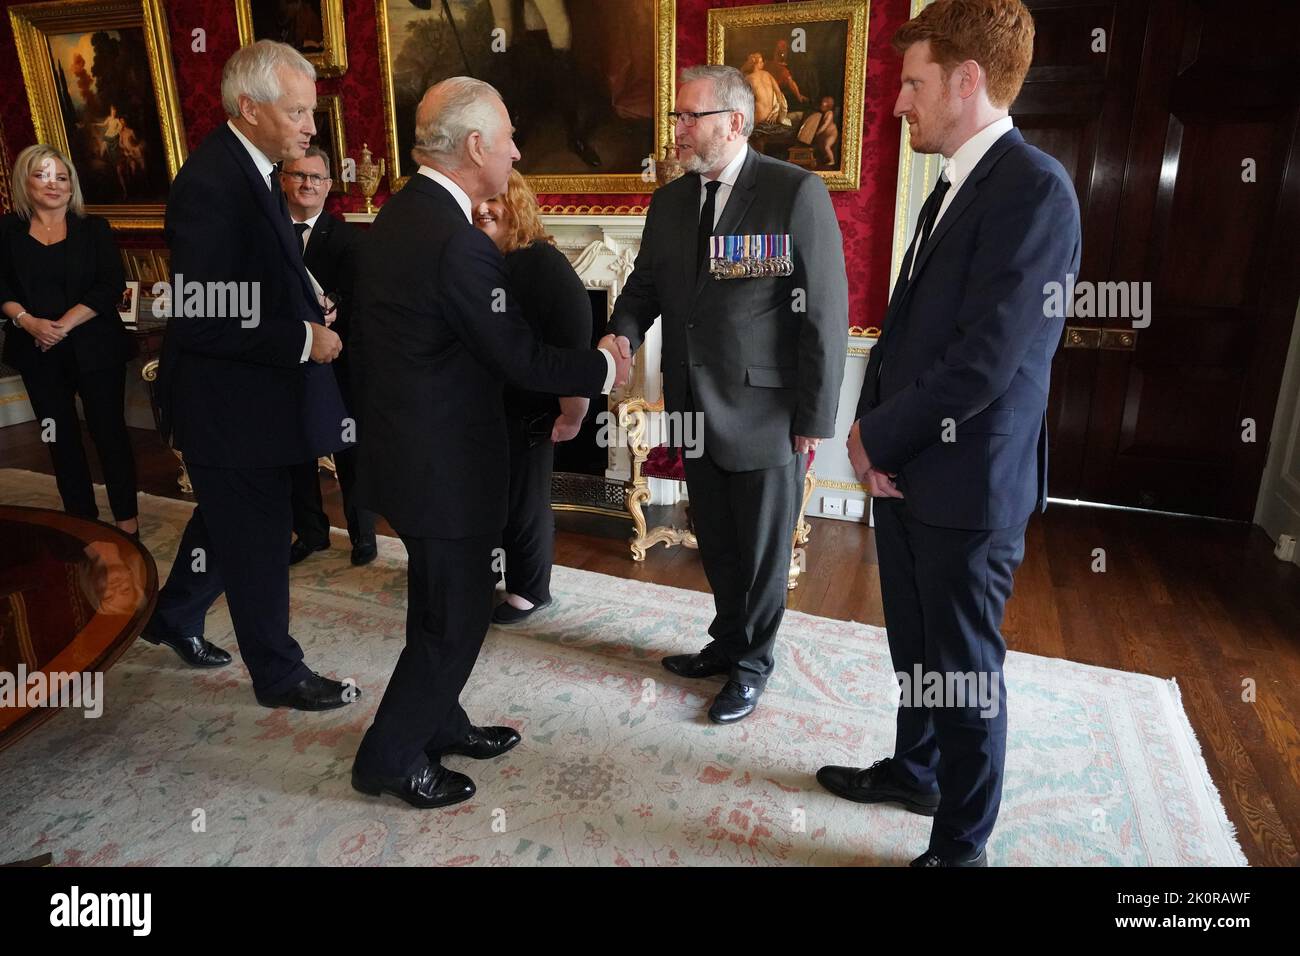 Re Carlo III stringe le mani con il leader dell'UUP Doug Beattie al castello di Hillsborough, Co Down. Data immagine: Martedì 13 settembre 2022. Foto Stock